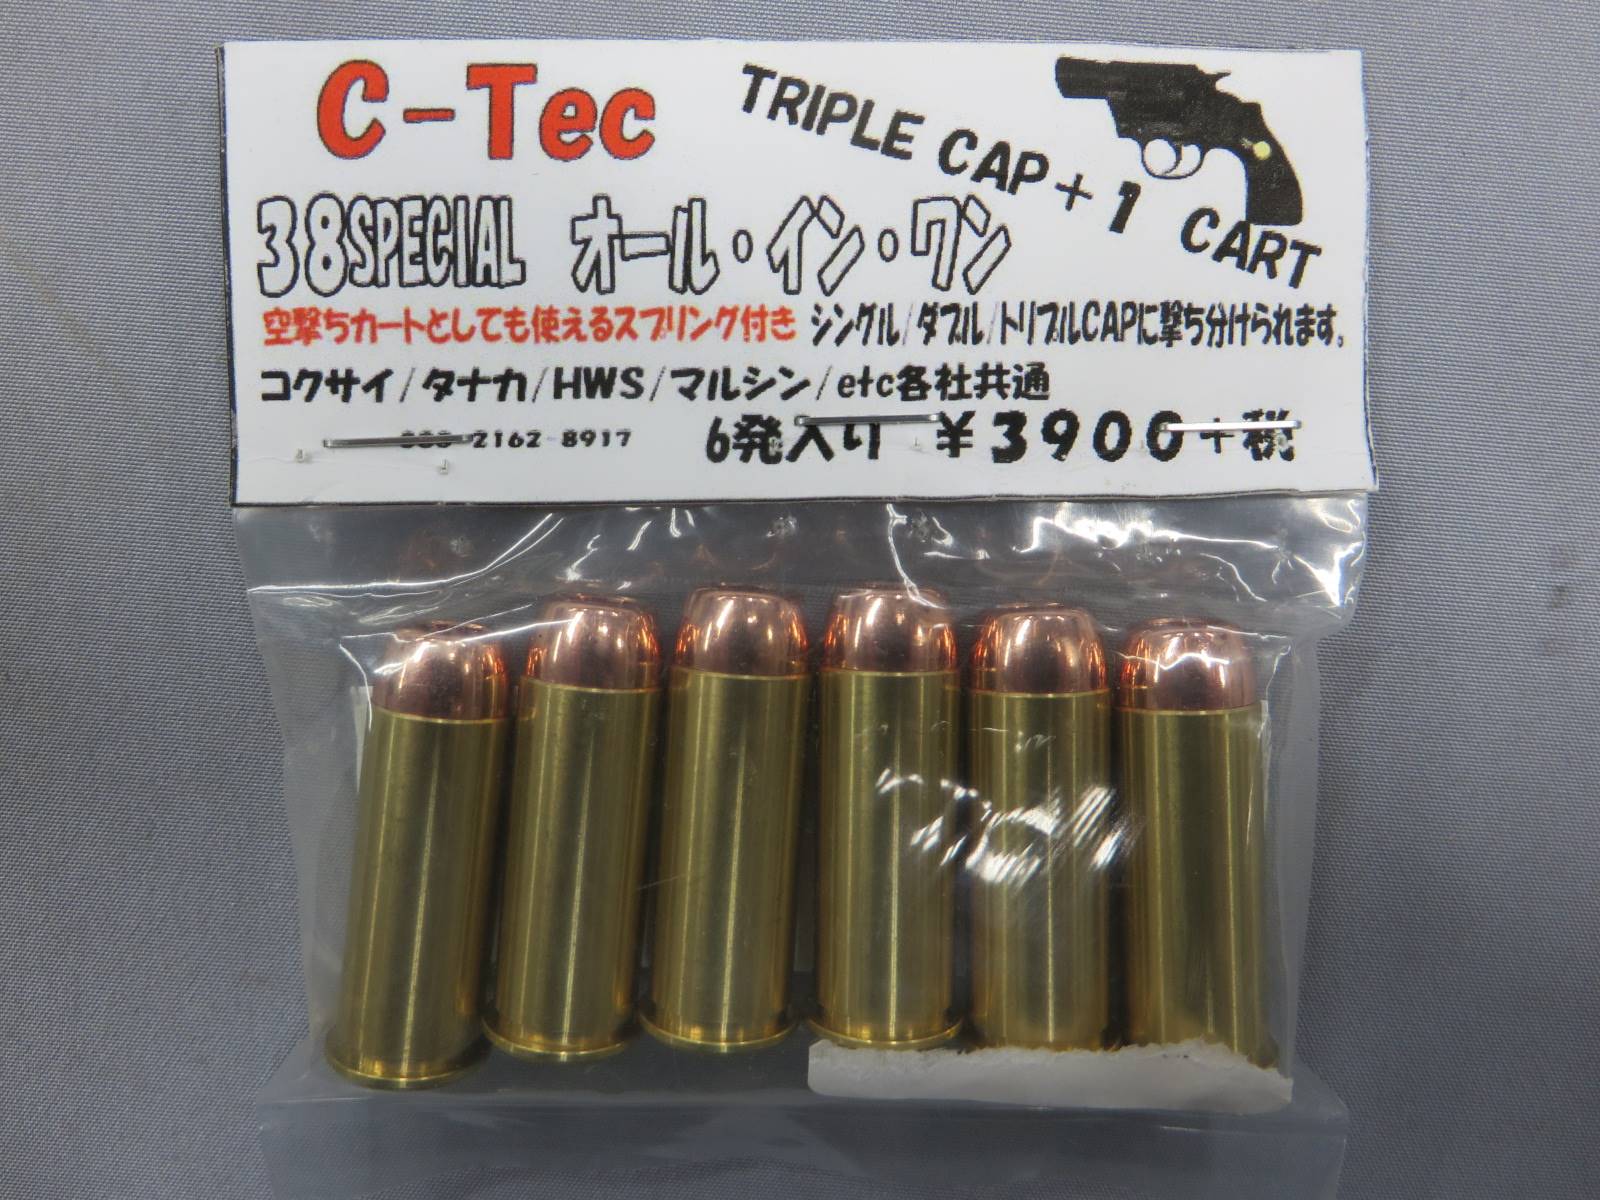 【C-TEC】38SPECIAL オールインワン トリプルキャップ+1カート